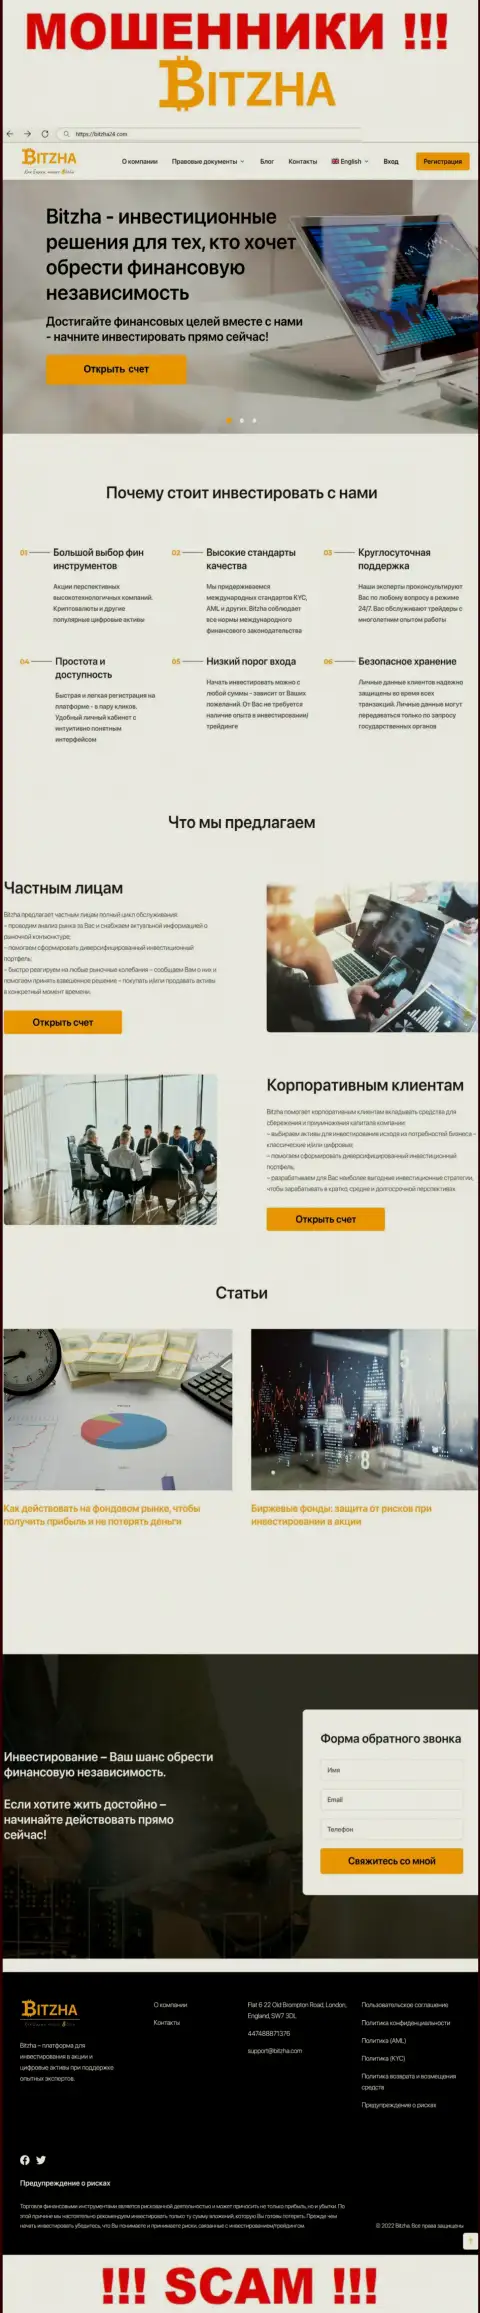 На официальном веб-сервисе Bitzha лохов разводят на финансовые средства